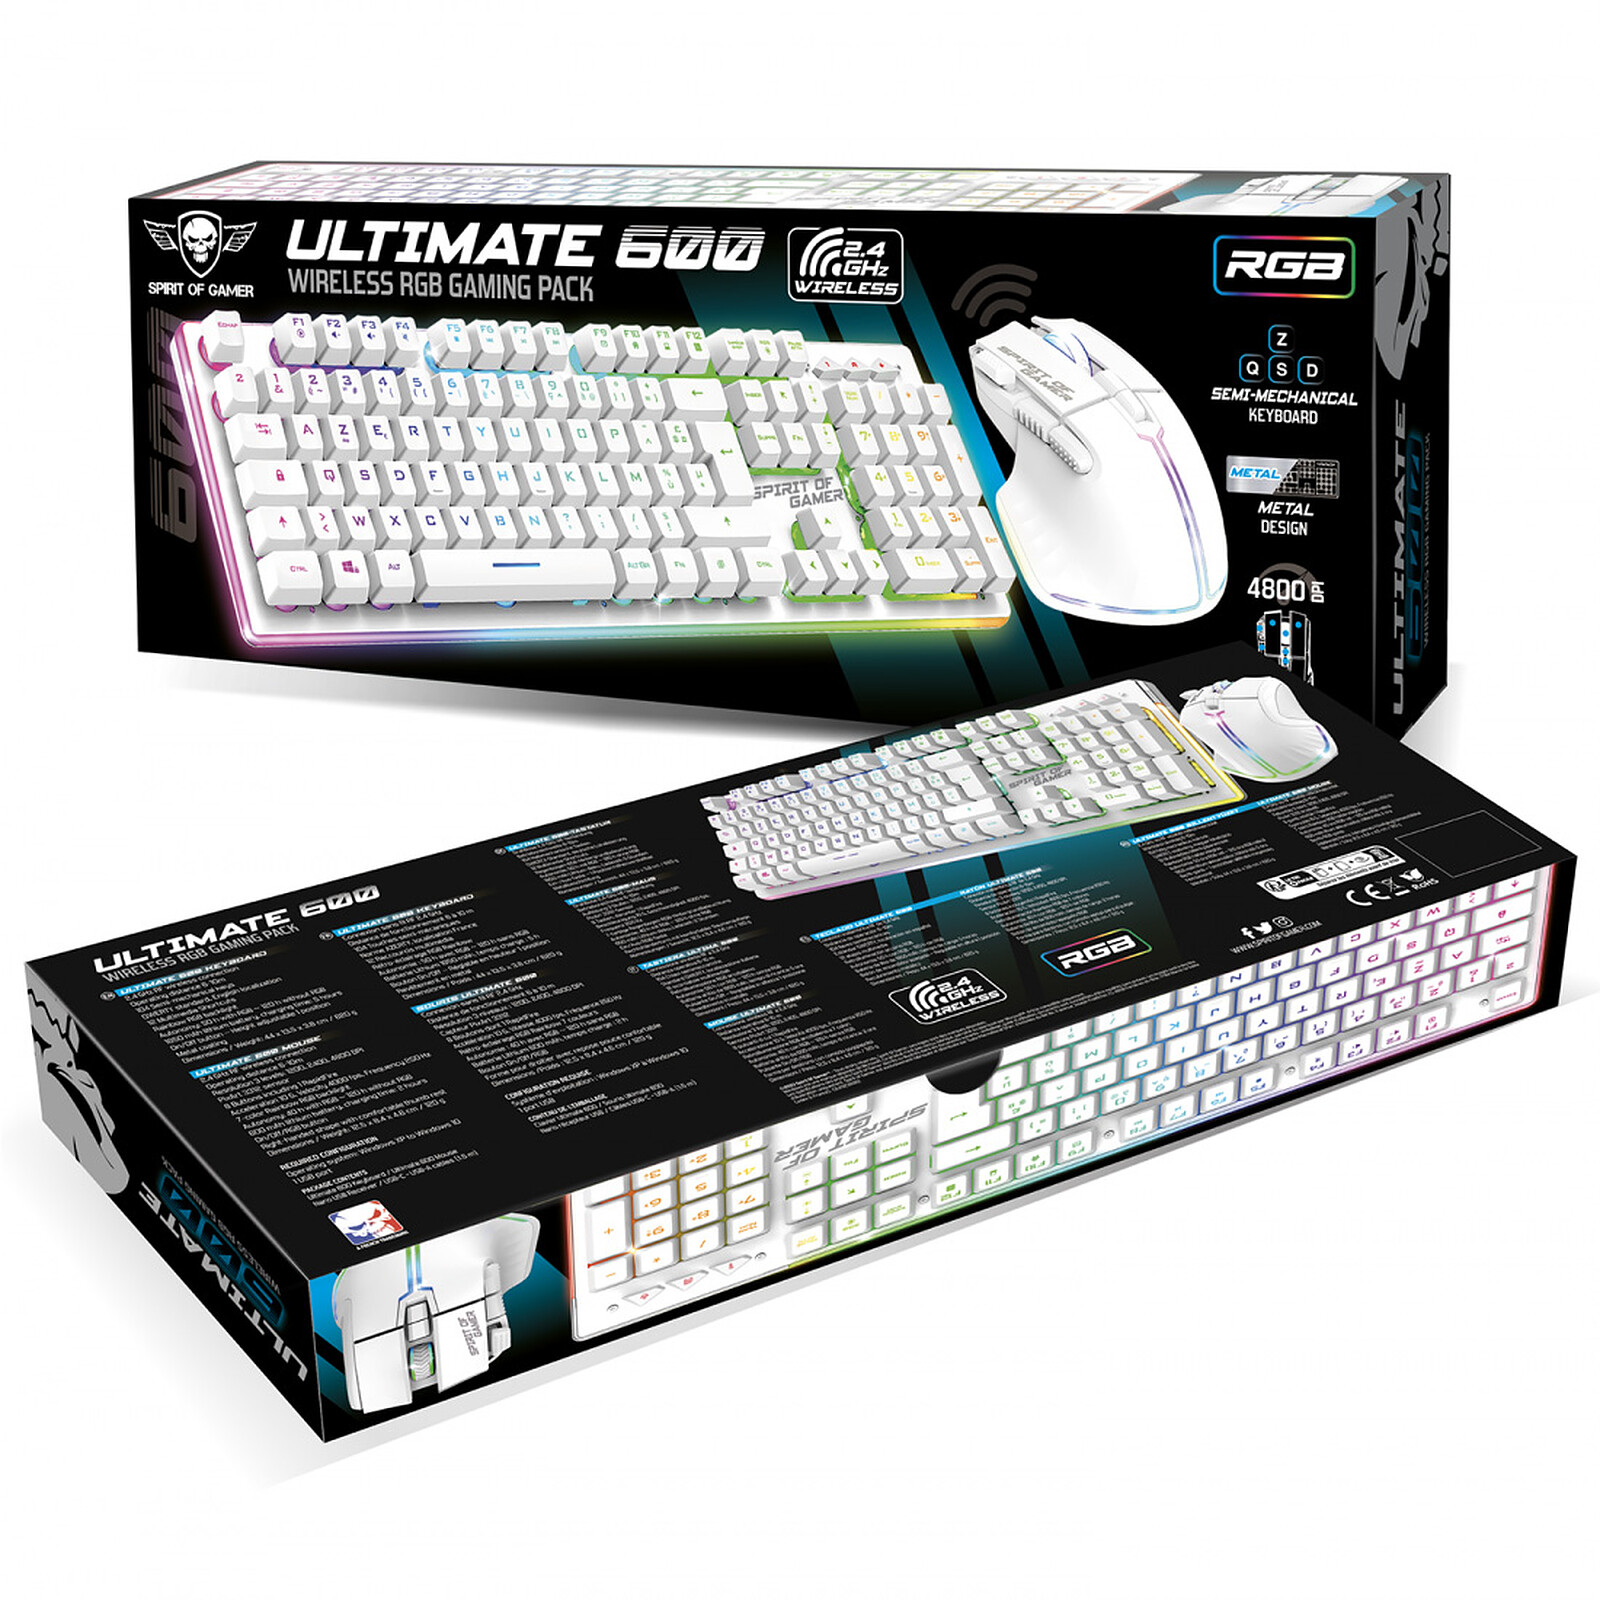 Le meilleur clavier et souris pour gamer blanc avec rétroéclairage